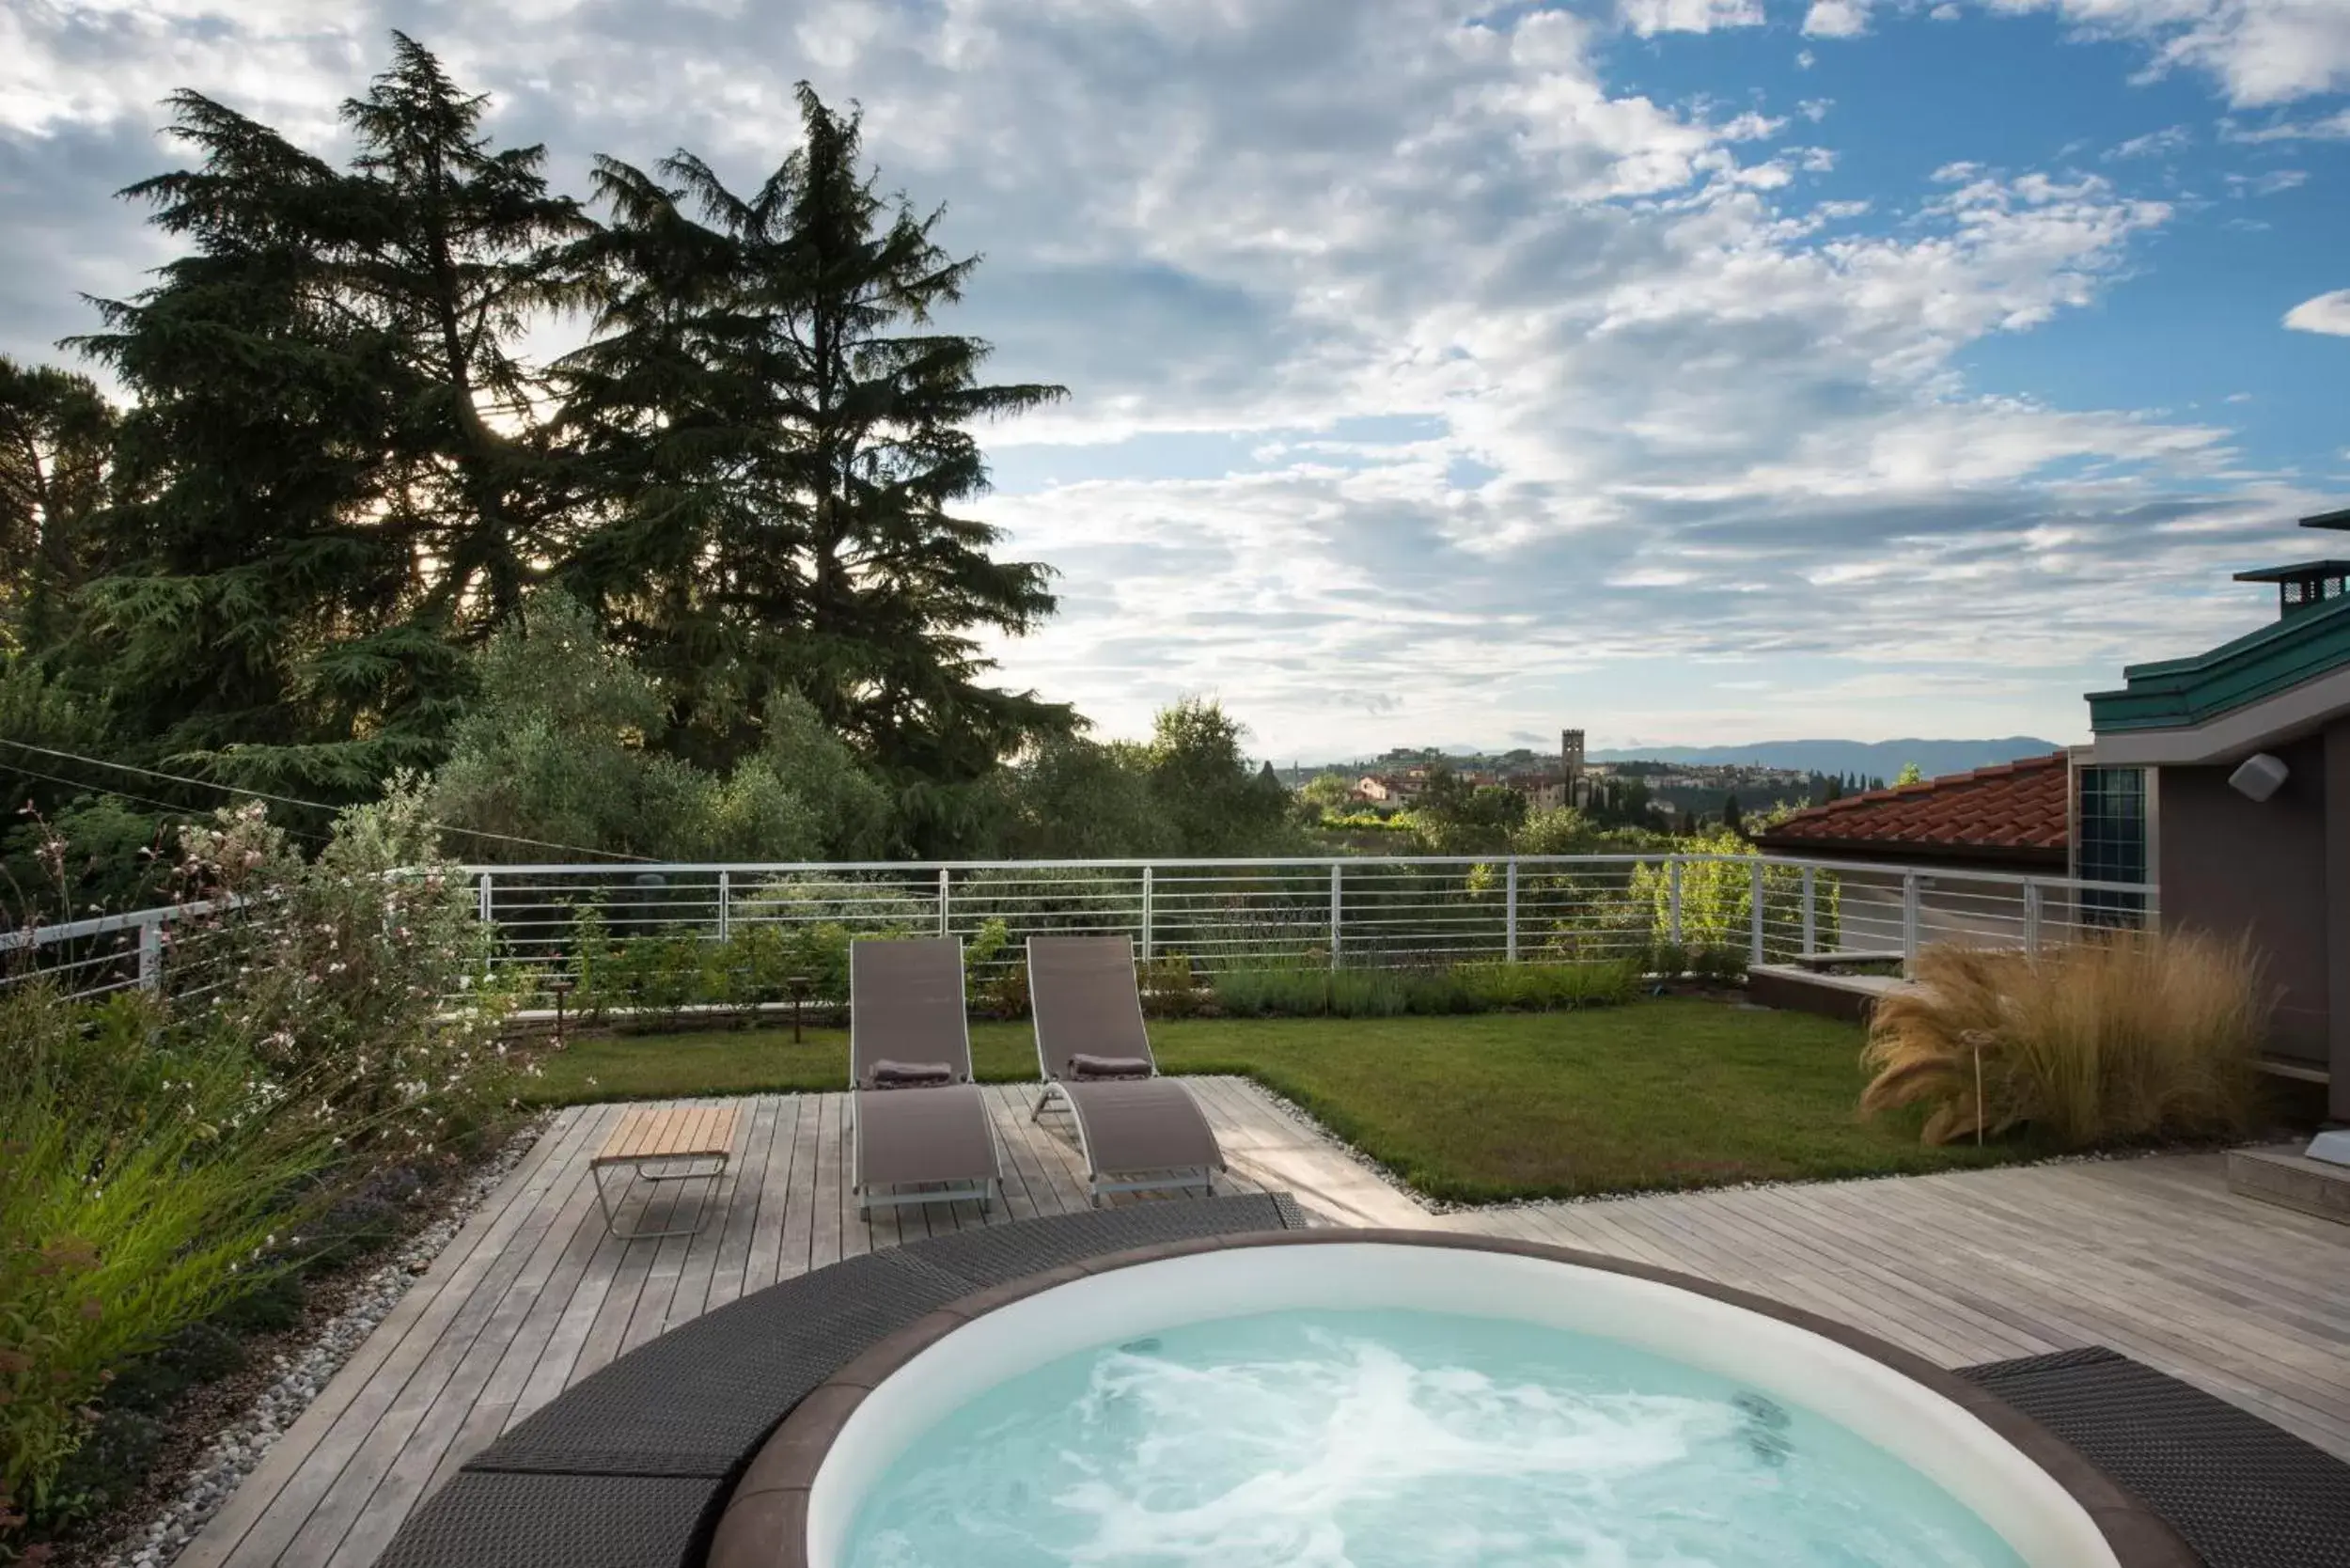 Hot Tub, Swimming Pool in Dame di Toscana